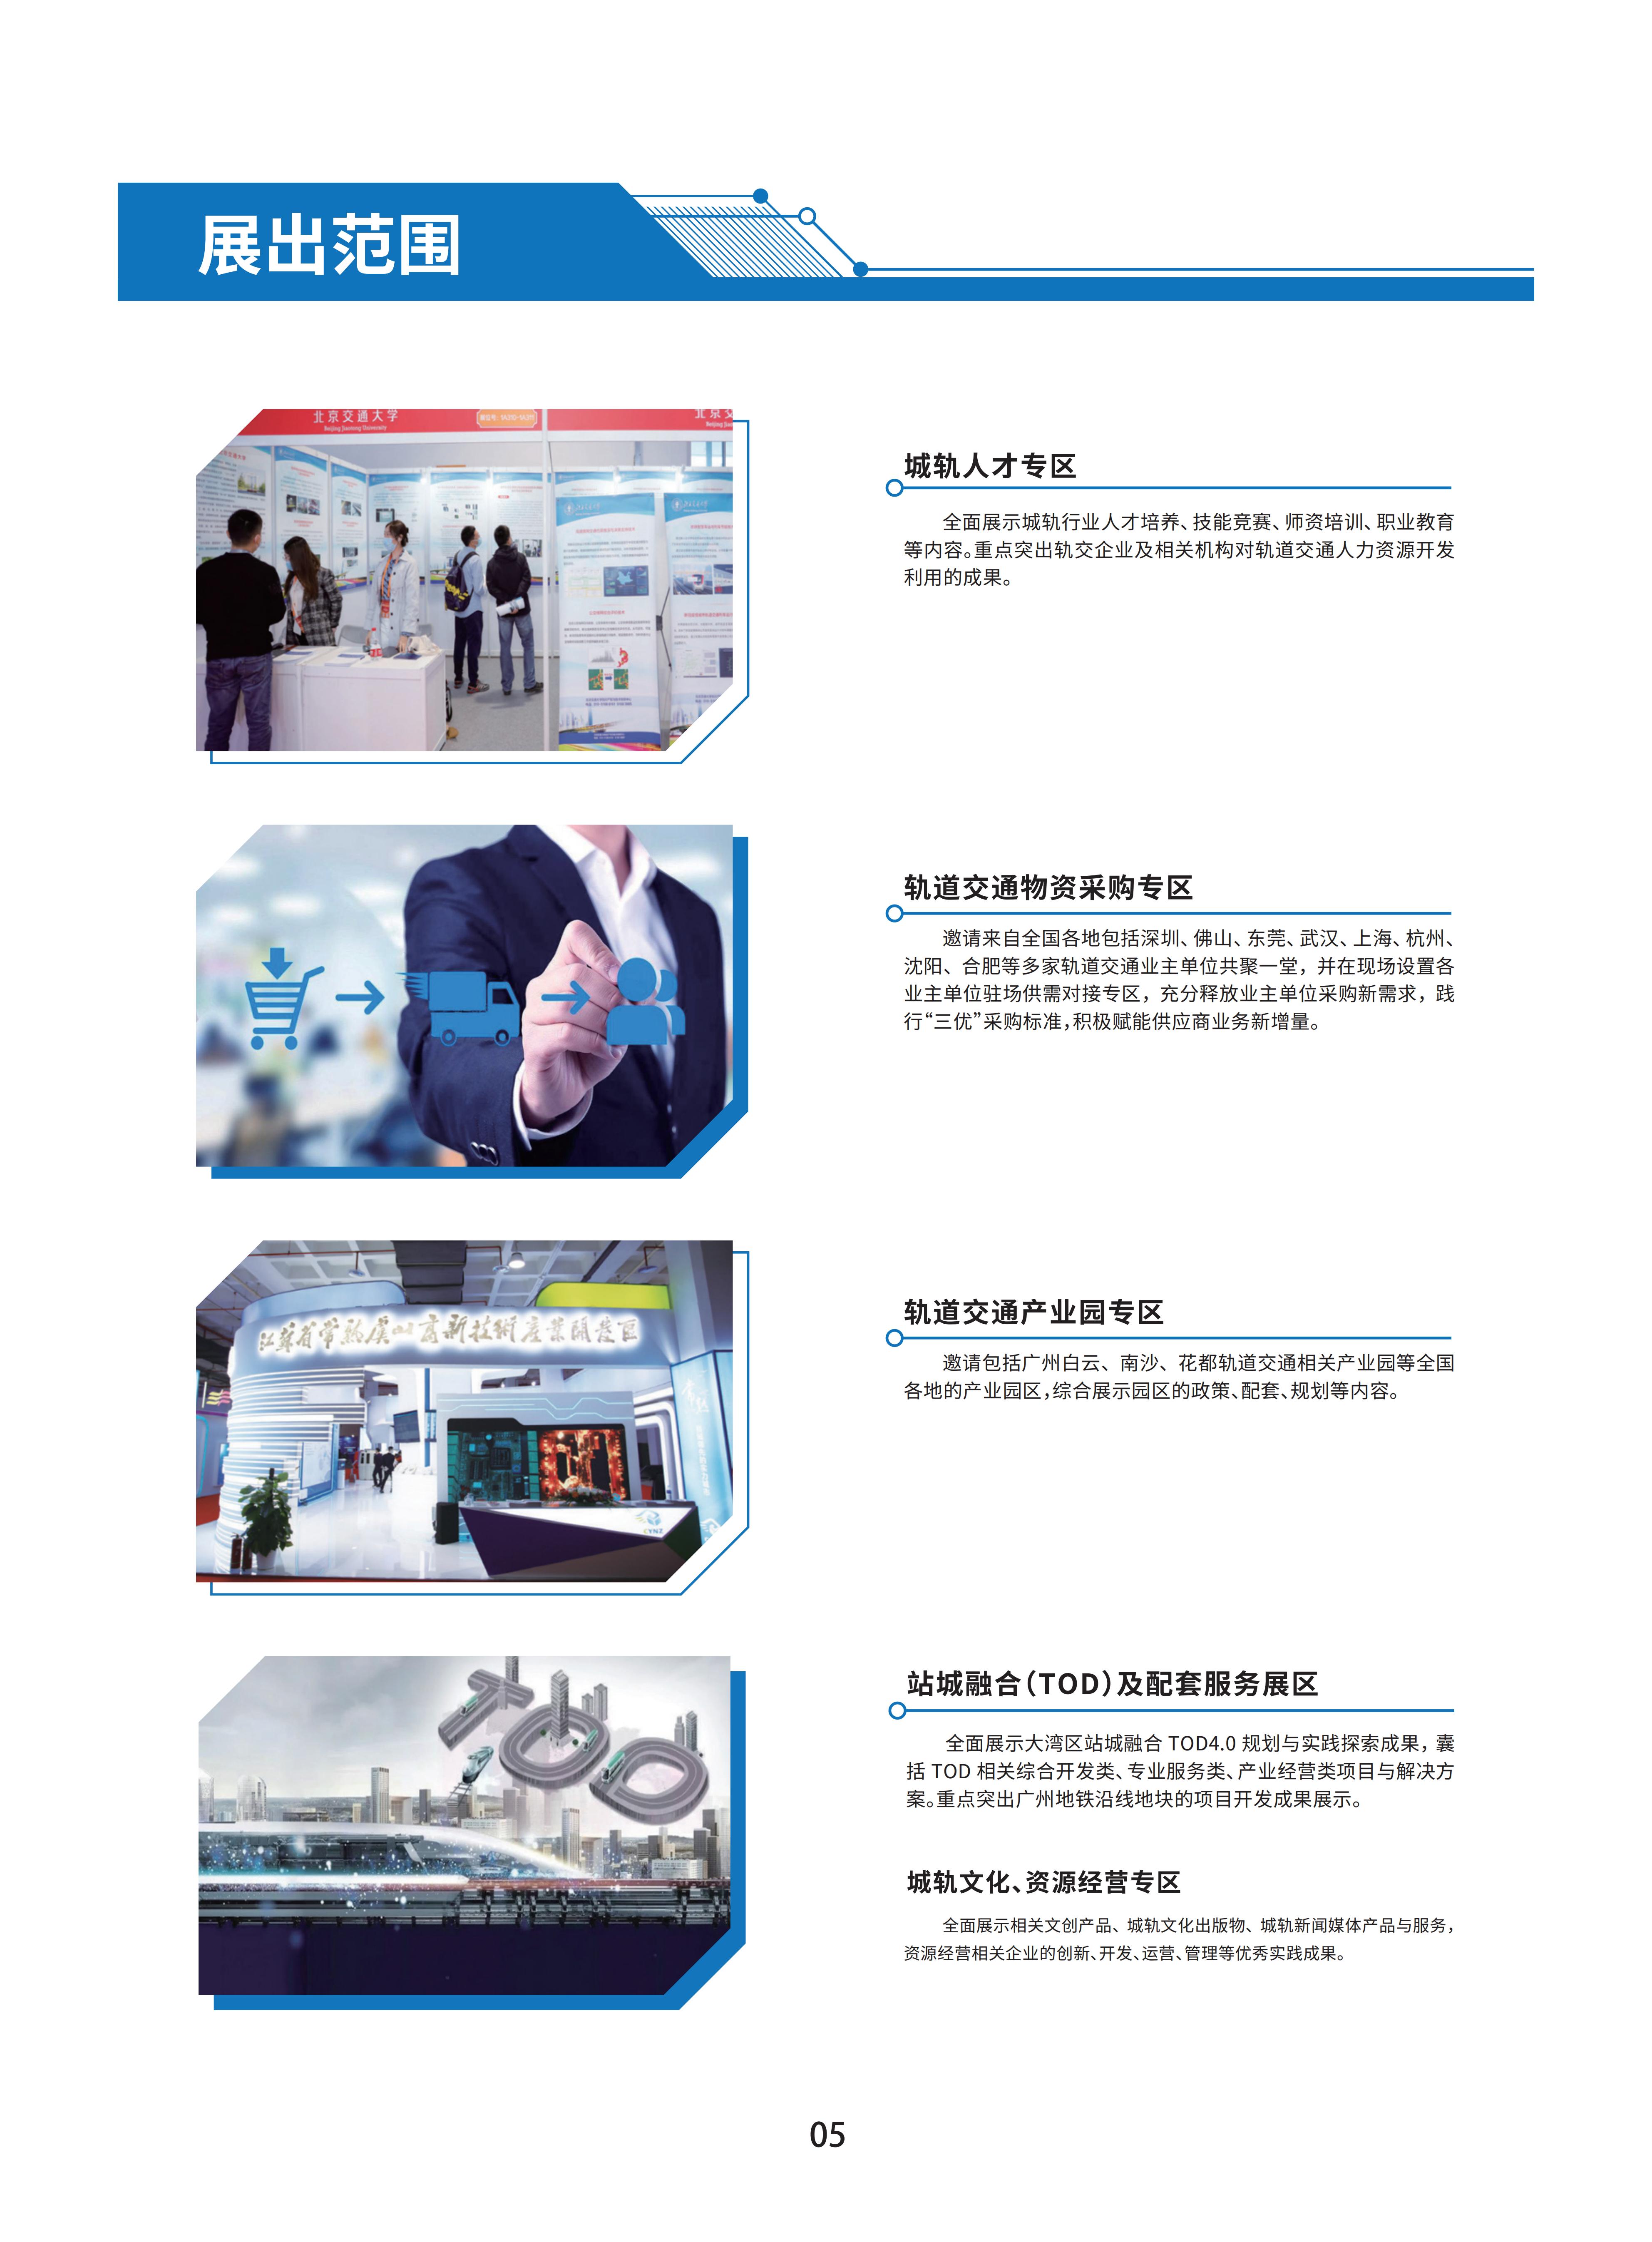 首届广州国际轨道交通展招商手册-20230306_07.jpg